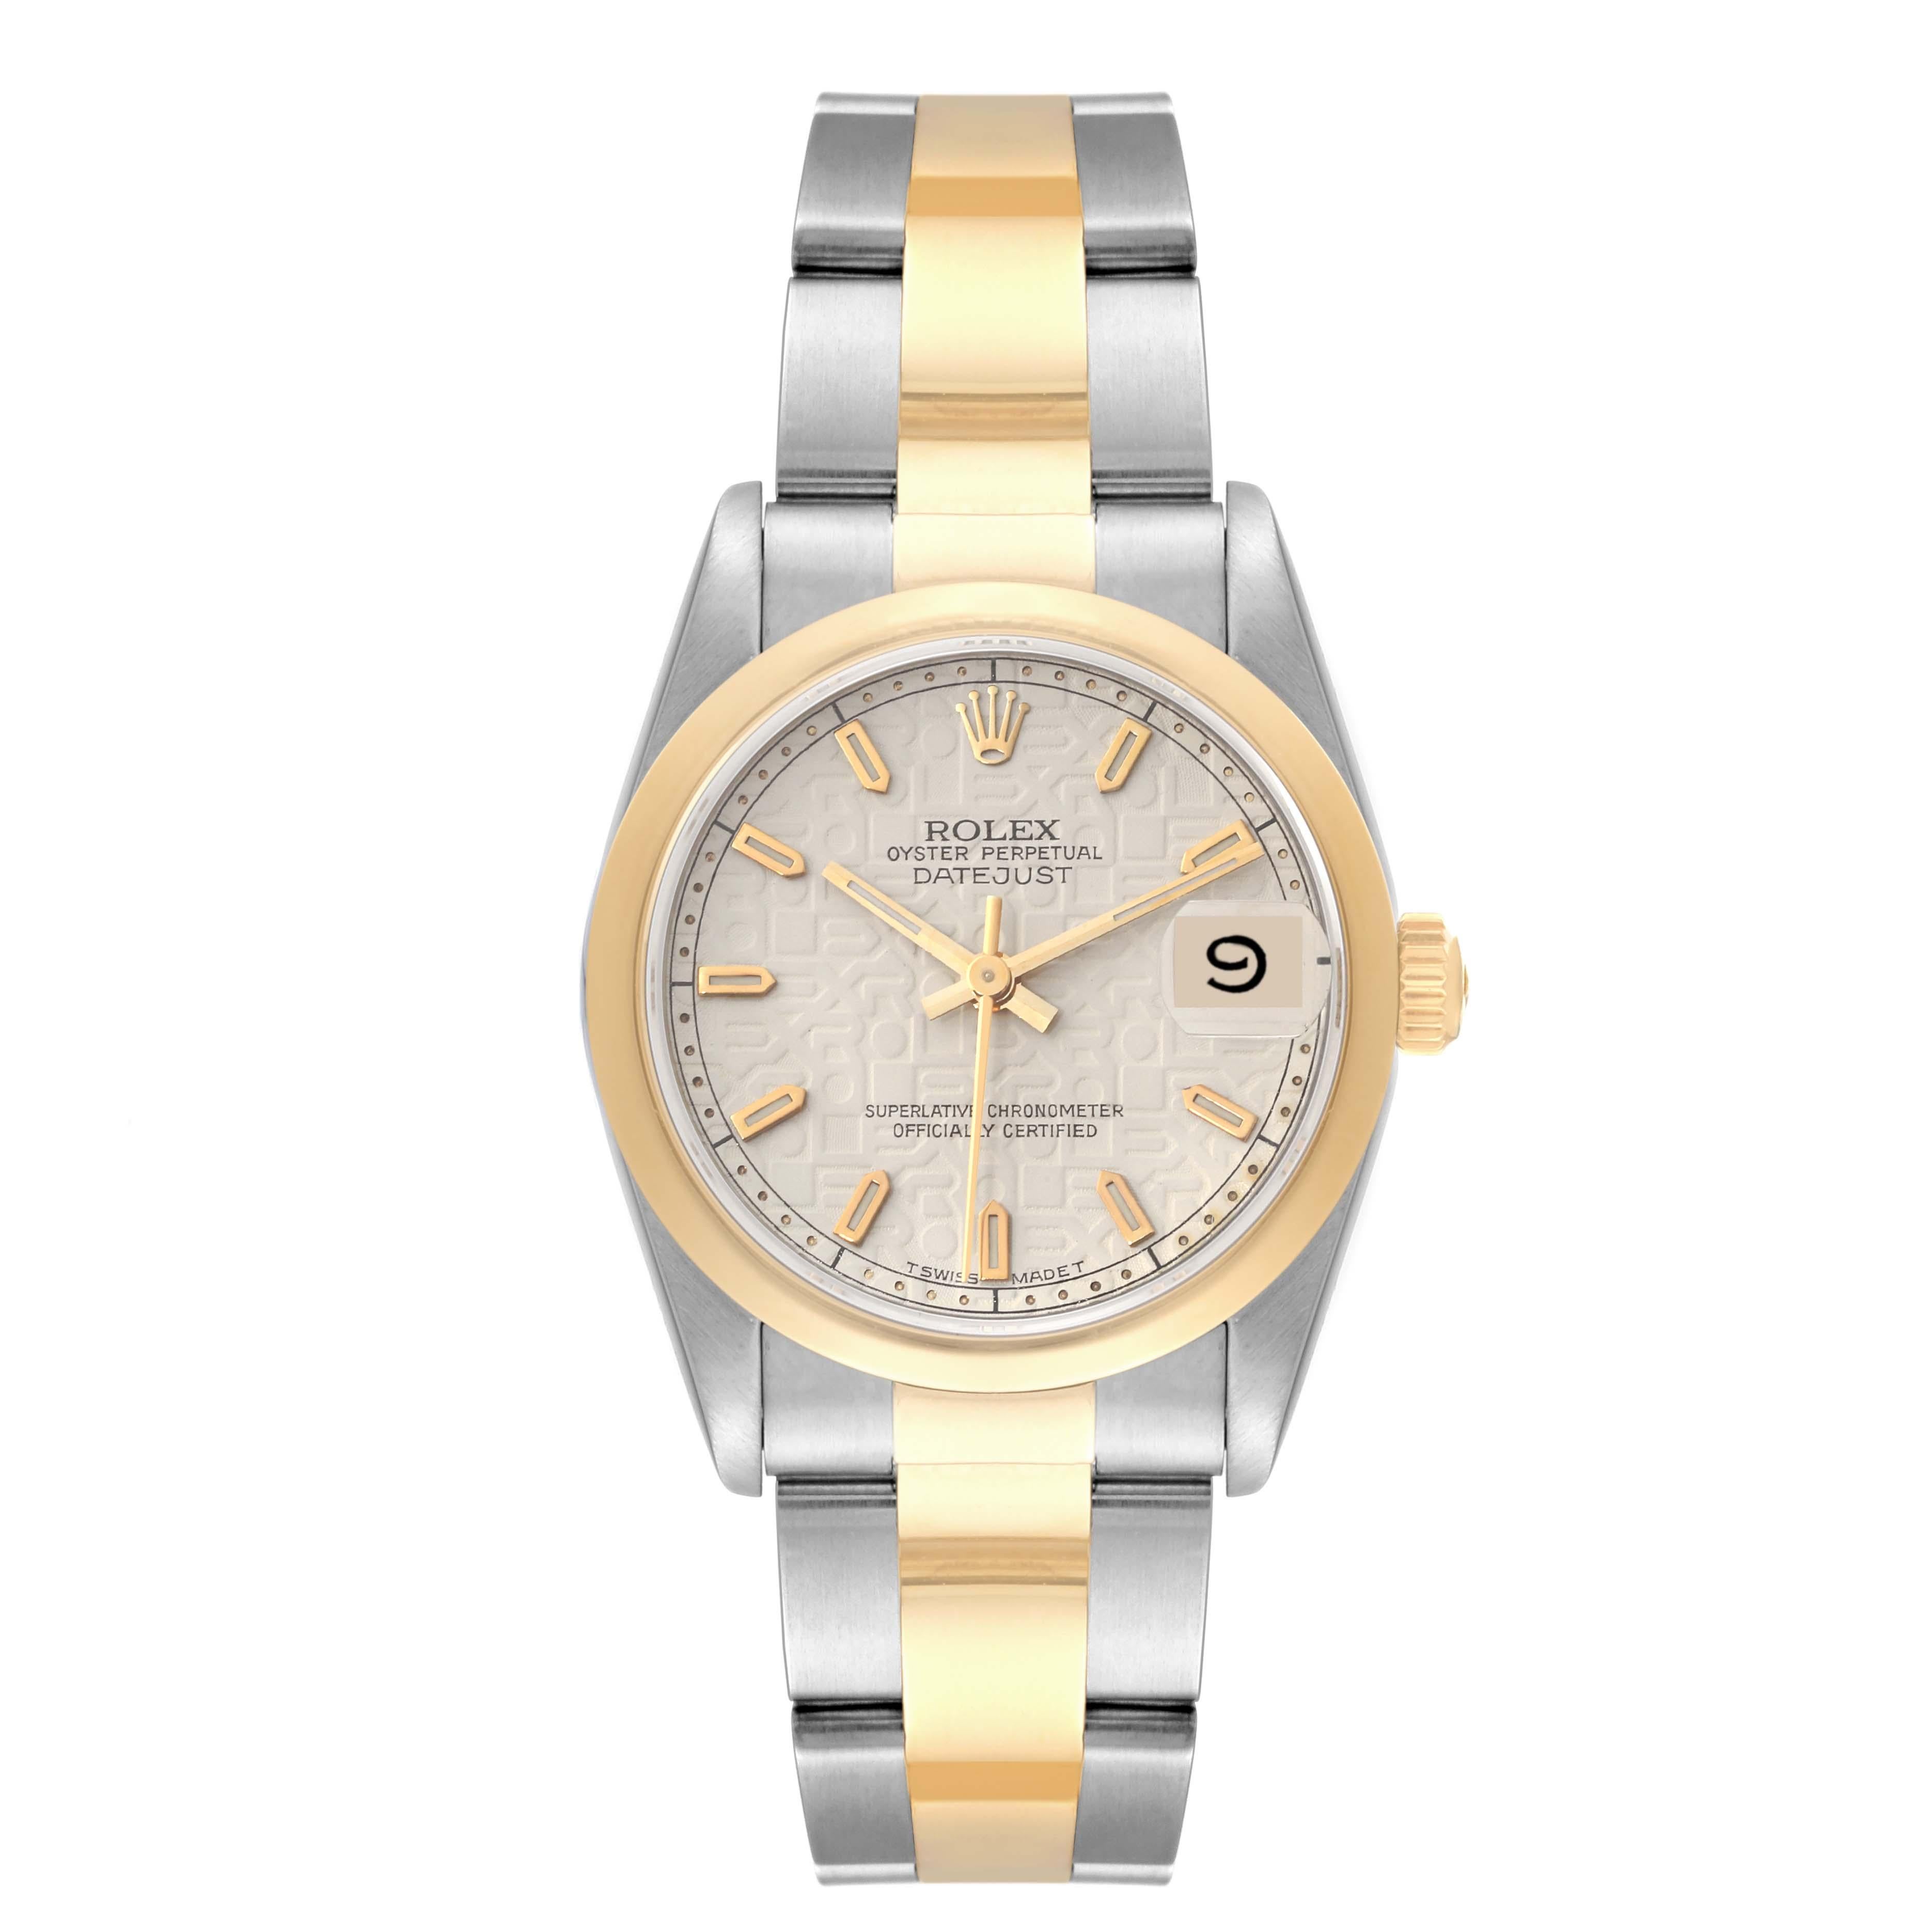 Rolex Datejust Midsize Steel Yellow Gold Anniversary Dial Ladies Watch 68243. Mouvement à remontage automatique certifié officiellement chronomètre. Boîtier oyster en acier inoxydable de 31 mm de diamètre. Logo Rolex sur une couronne en or jaune 18